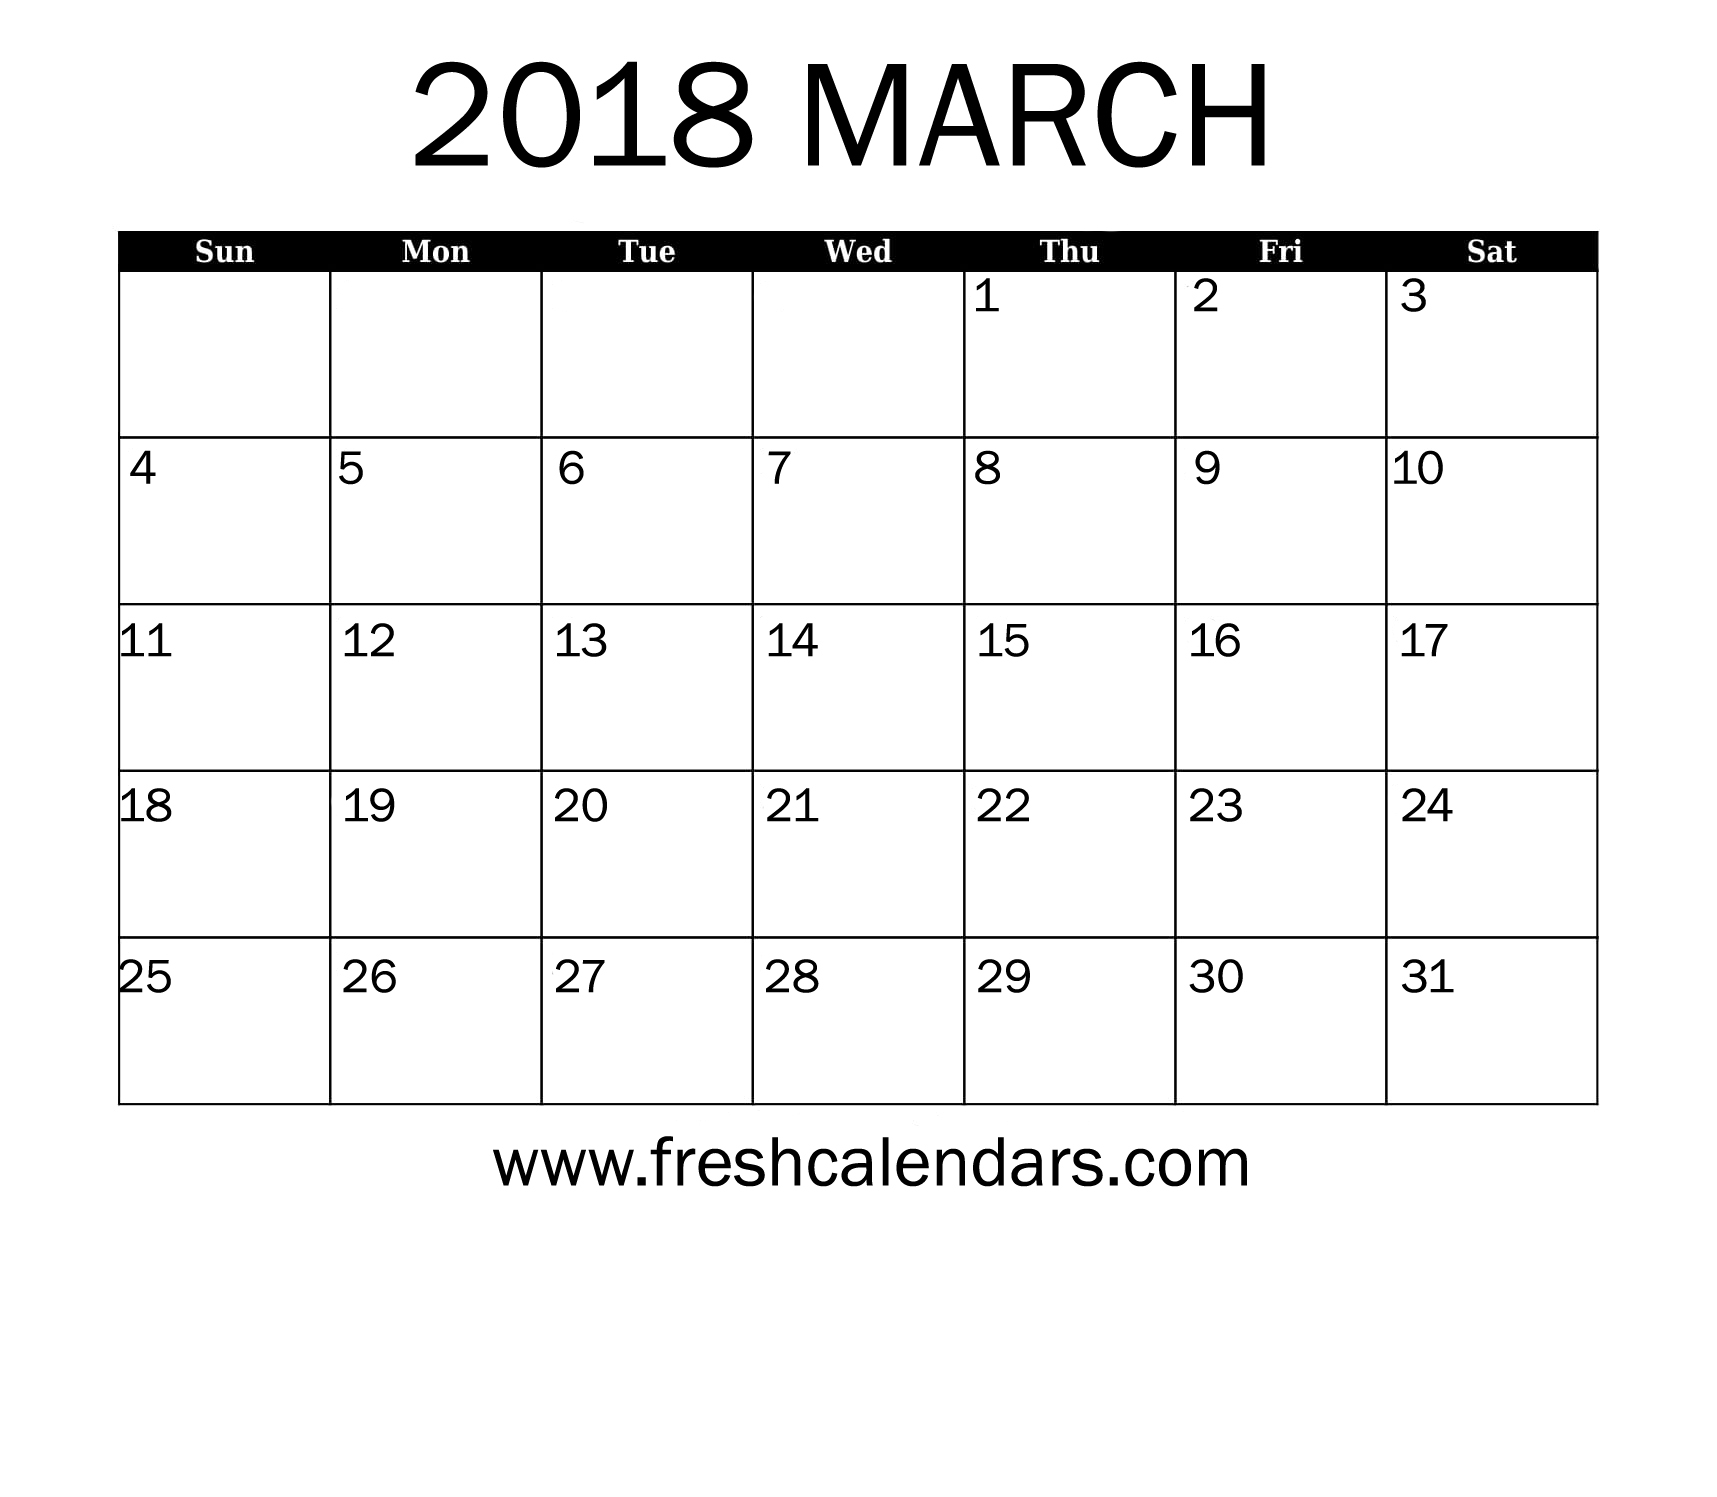 march-2018-calendar-printable